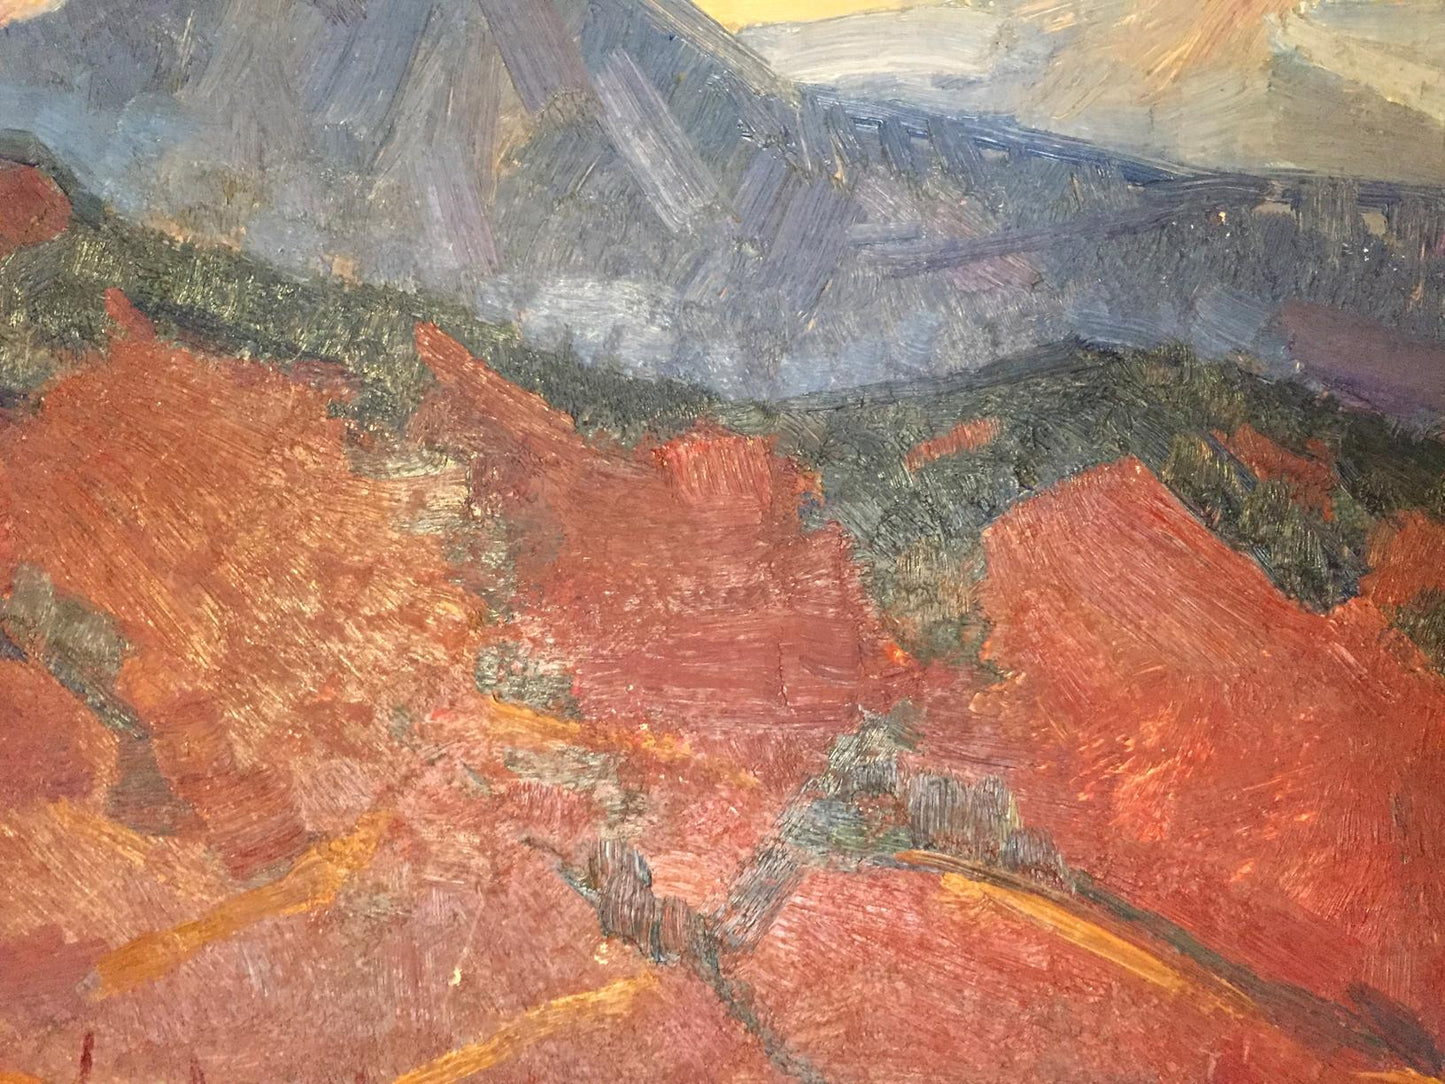 Nikolay Aleksandrovich Khrustalenko's oil painting capturing "The Mountains"